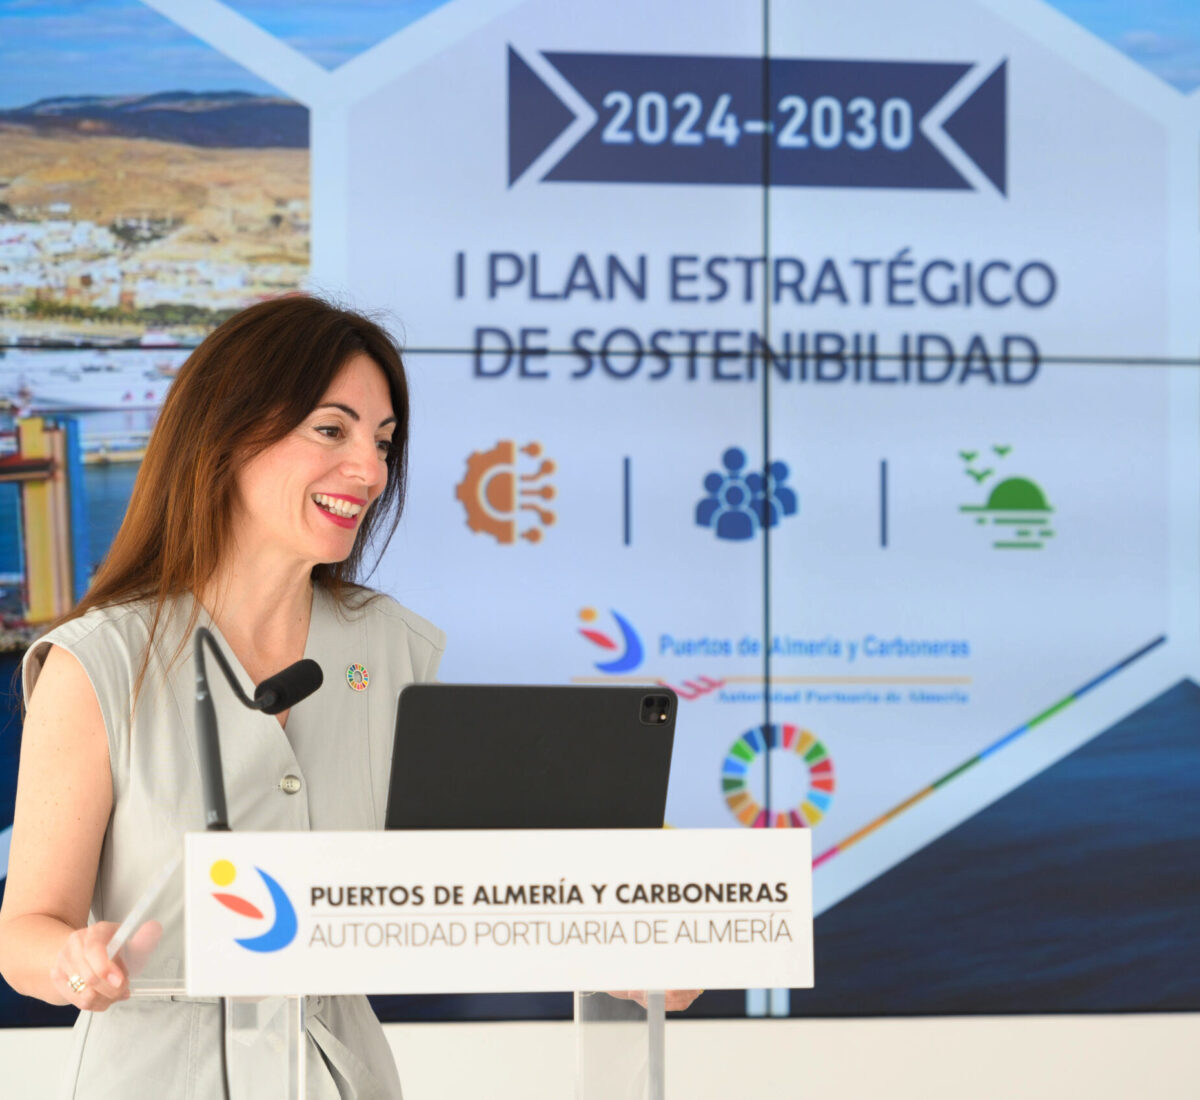 La presidenta de la APA, Rosario Soto, presentando el I Plan Estratégico de Sostenibilidad de la Autoridad Portuaria de Almería 2024-2030